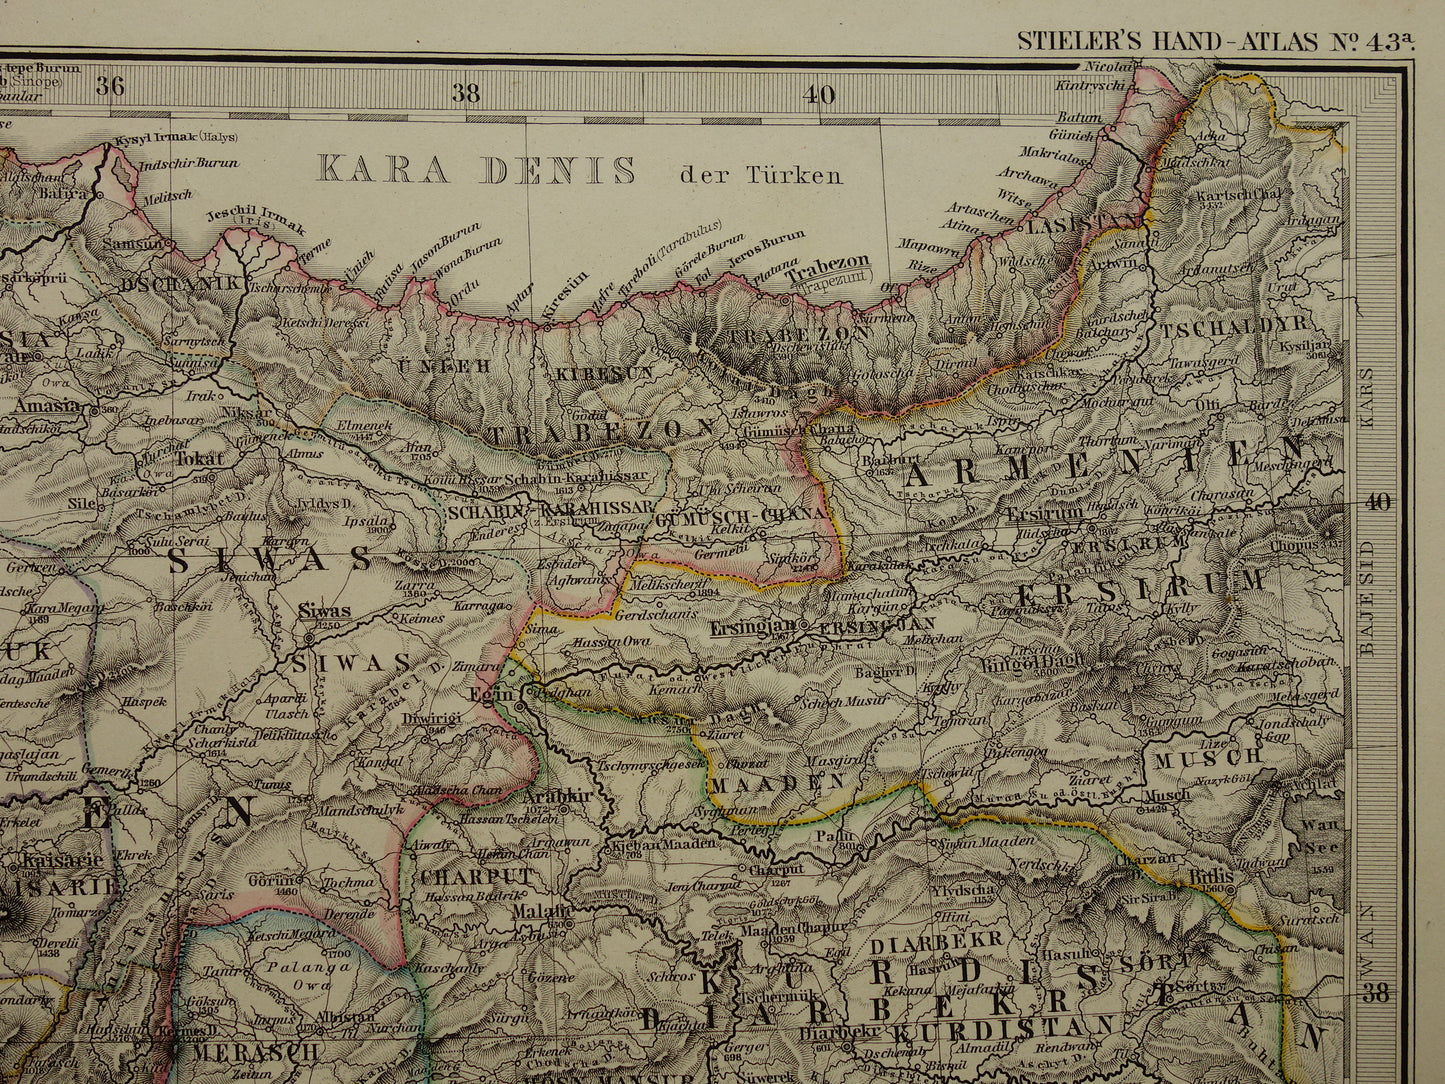 TURKIJE oude kaart van Klein-Azië Syrië 1875 originele grote antieke landkaart Midden-Oosten Cyprus Libanon Izmir Smyrna